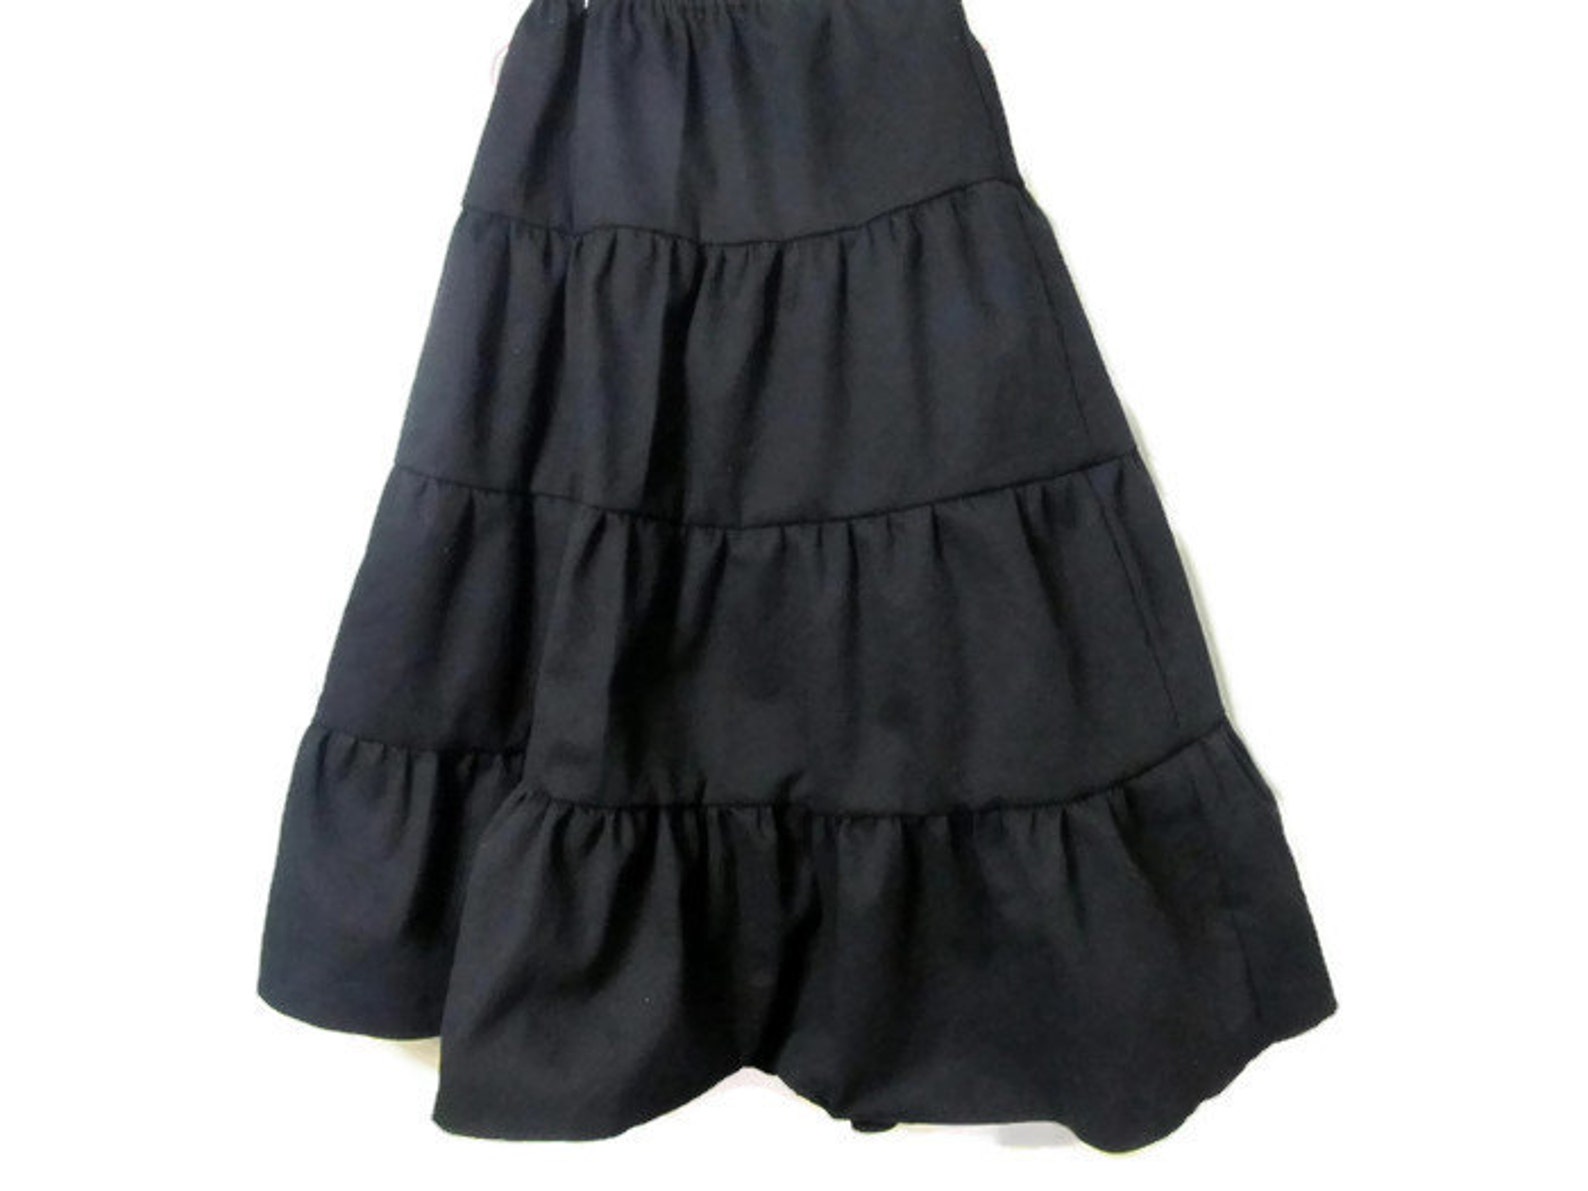 Girl's Black Skirt Black Skirt Girls Long Skirt - Etsy